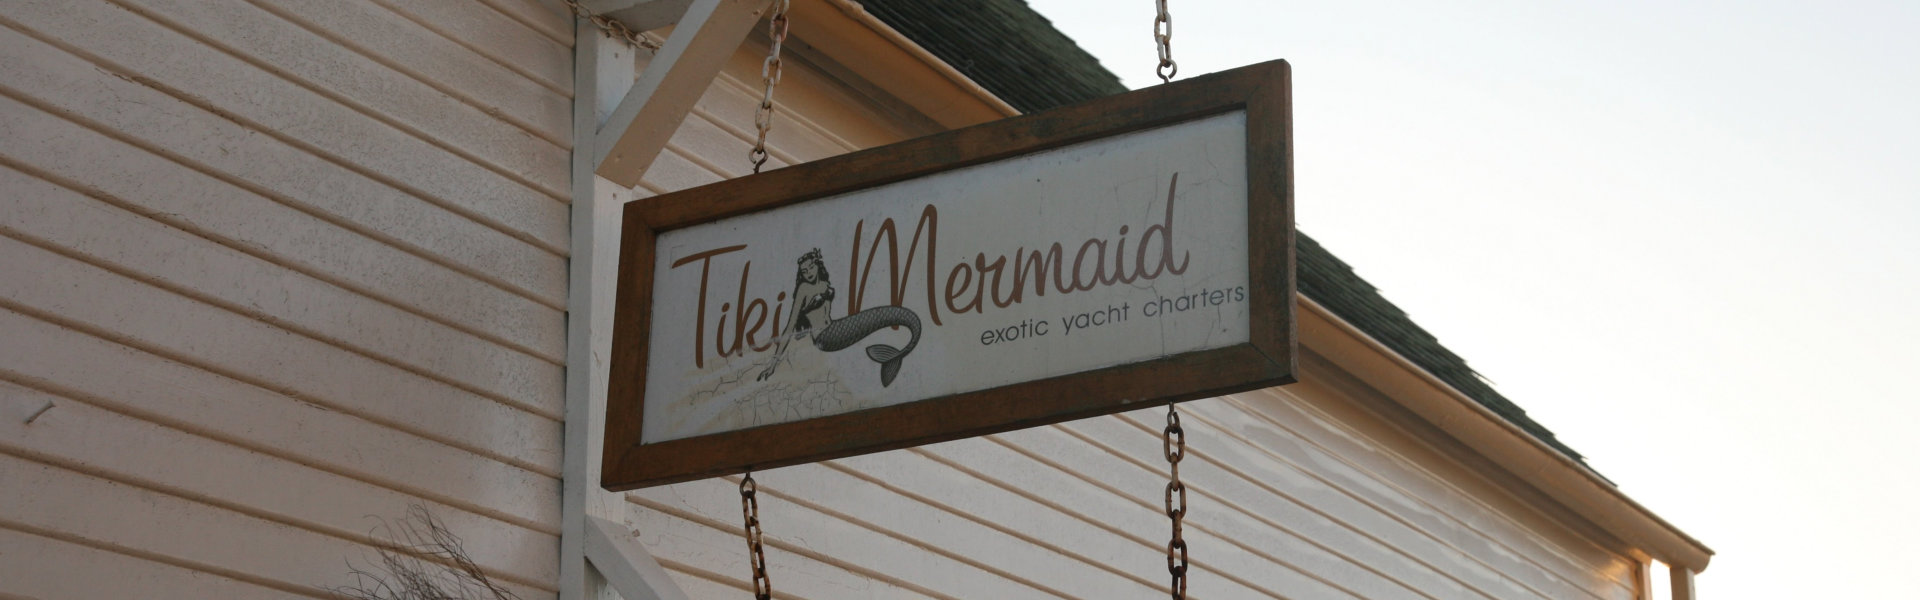 Tiki Mermaid signage